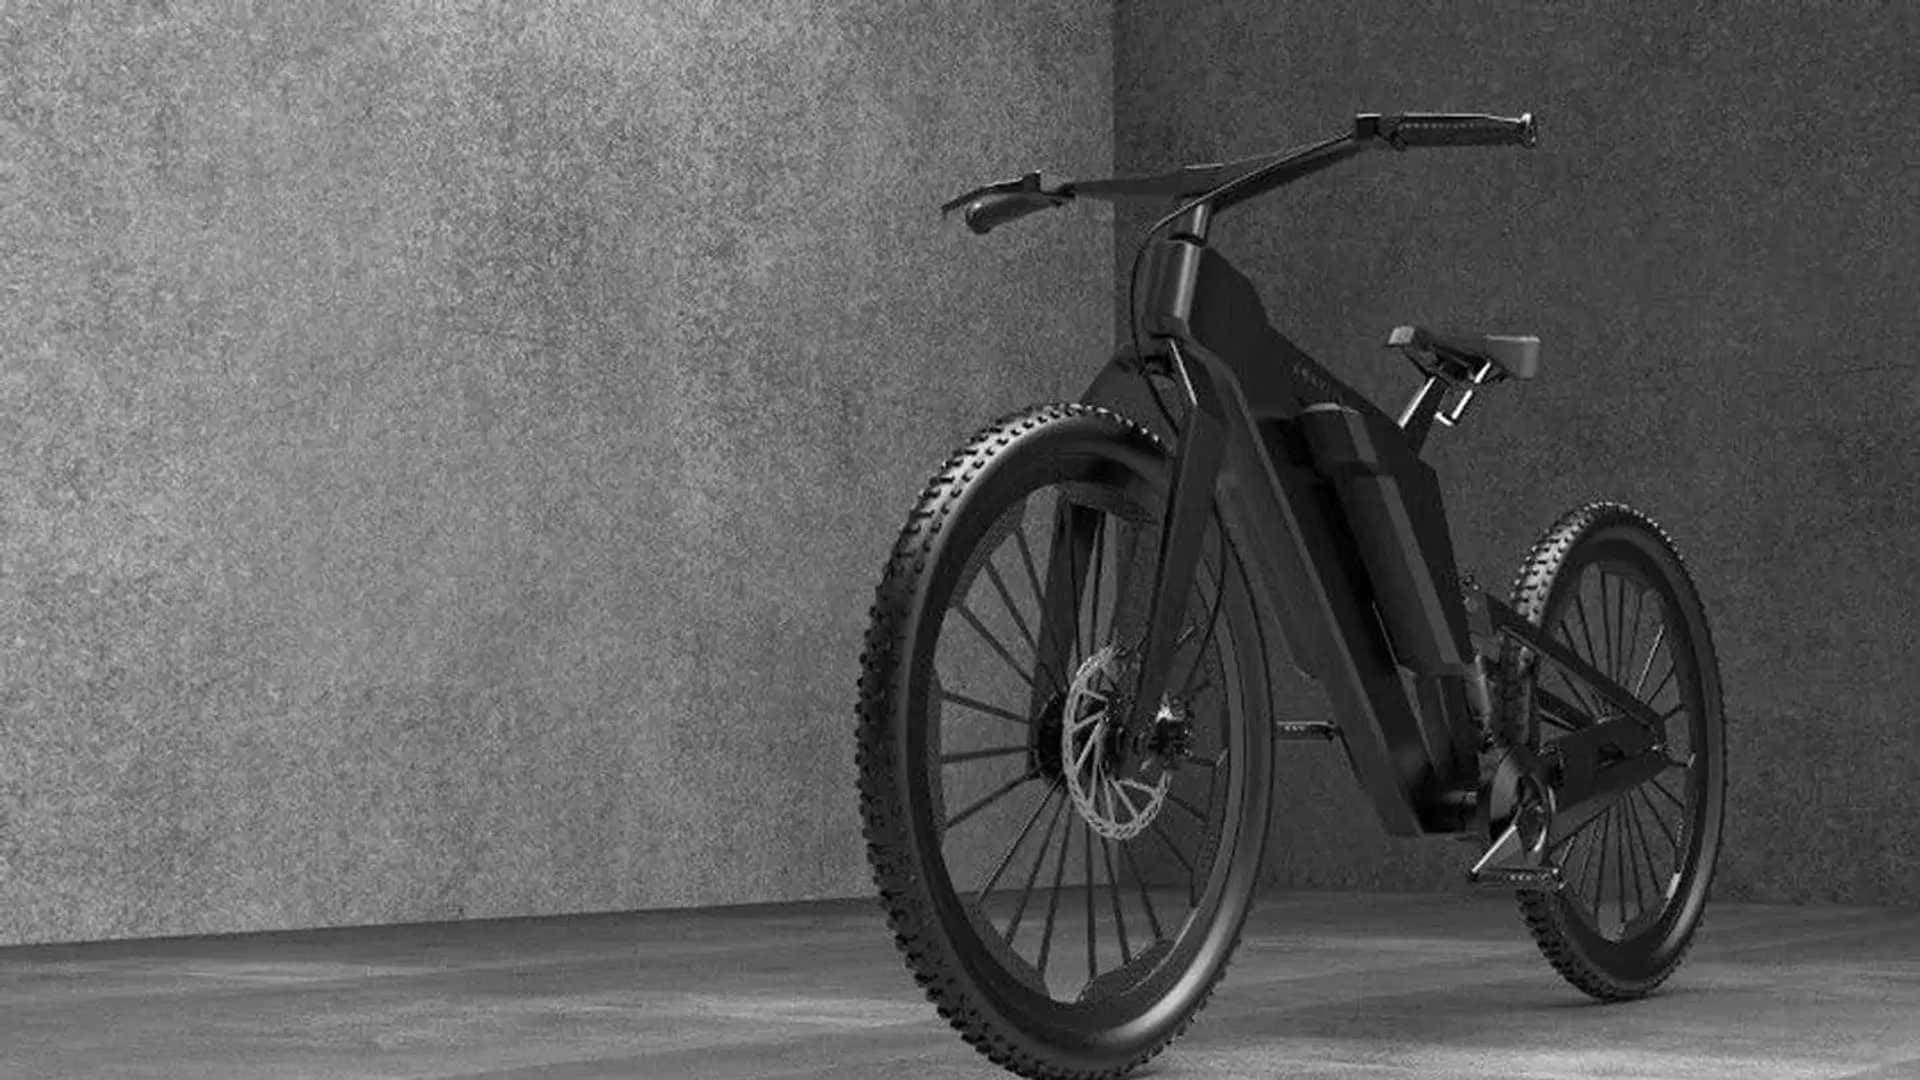 Stylish Electric Bike in Urban Setting Wallpaper